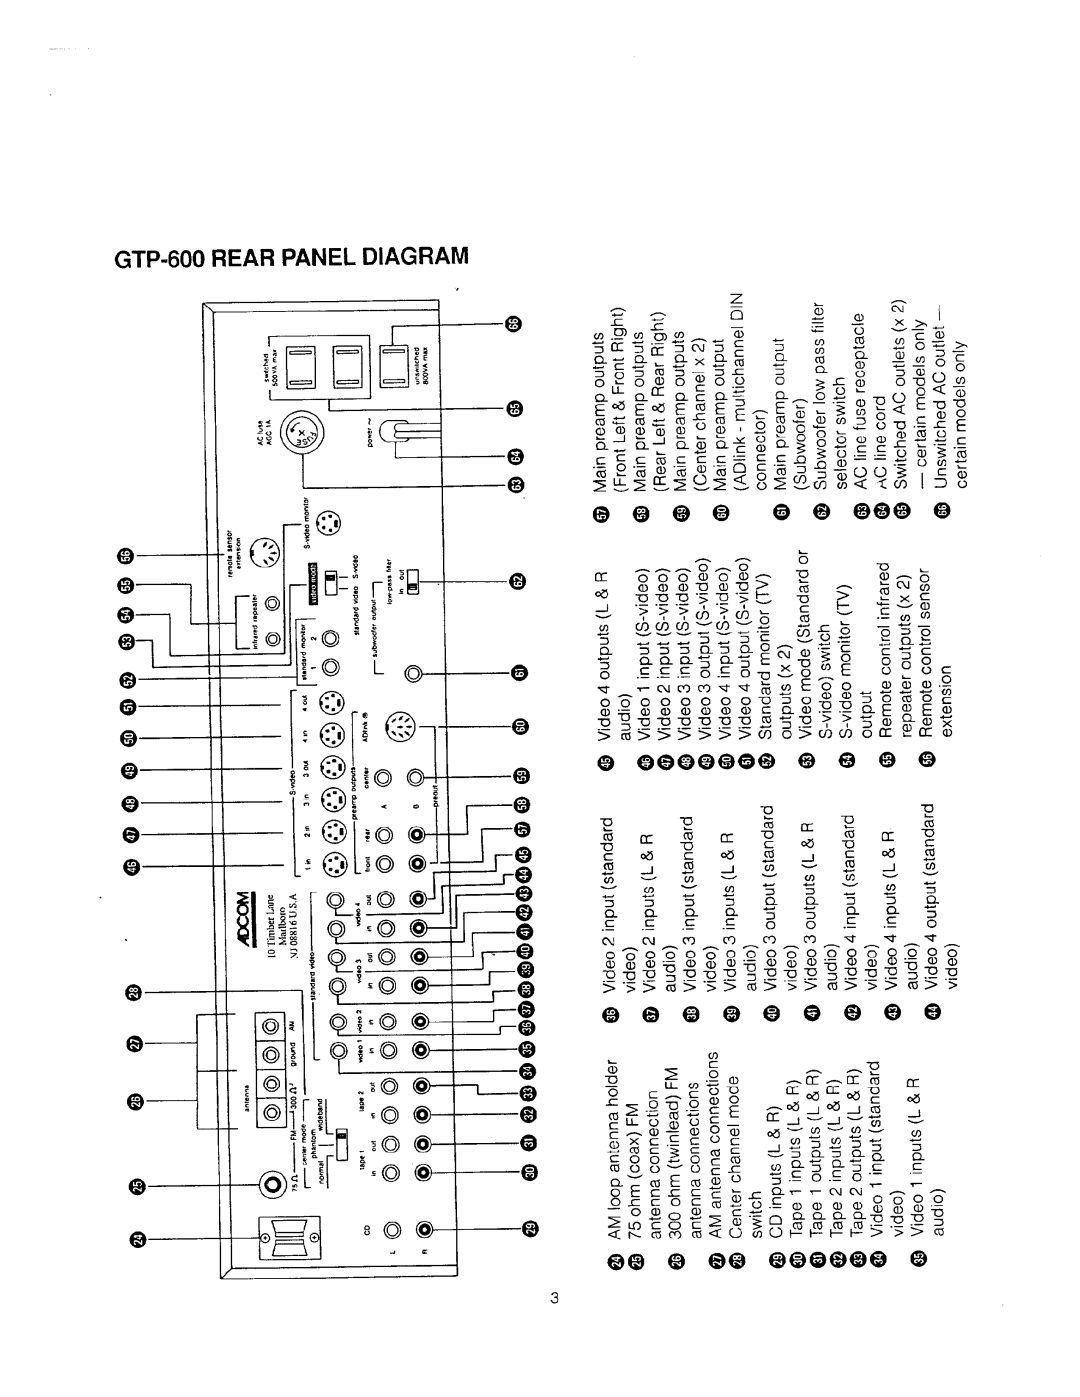 Adcom GTP-600 manual 